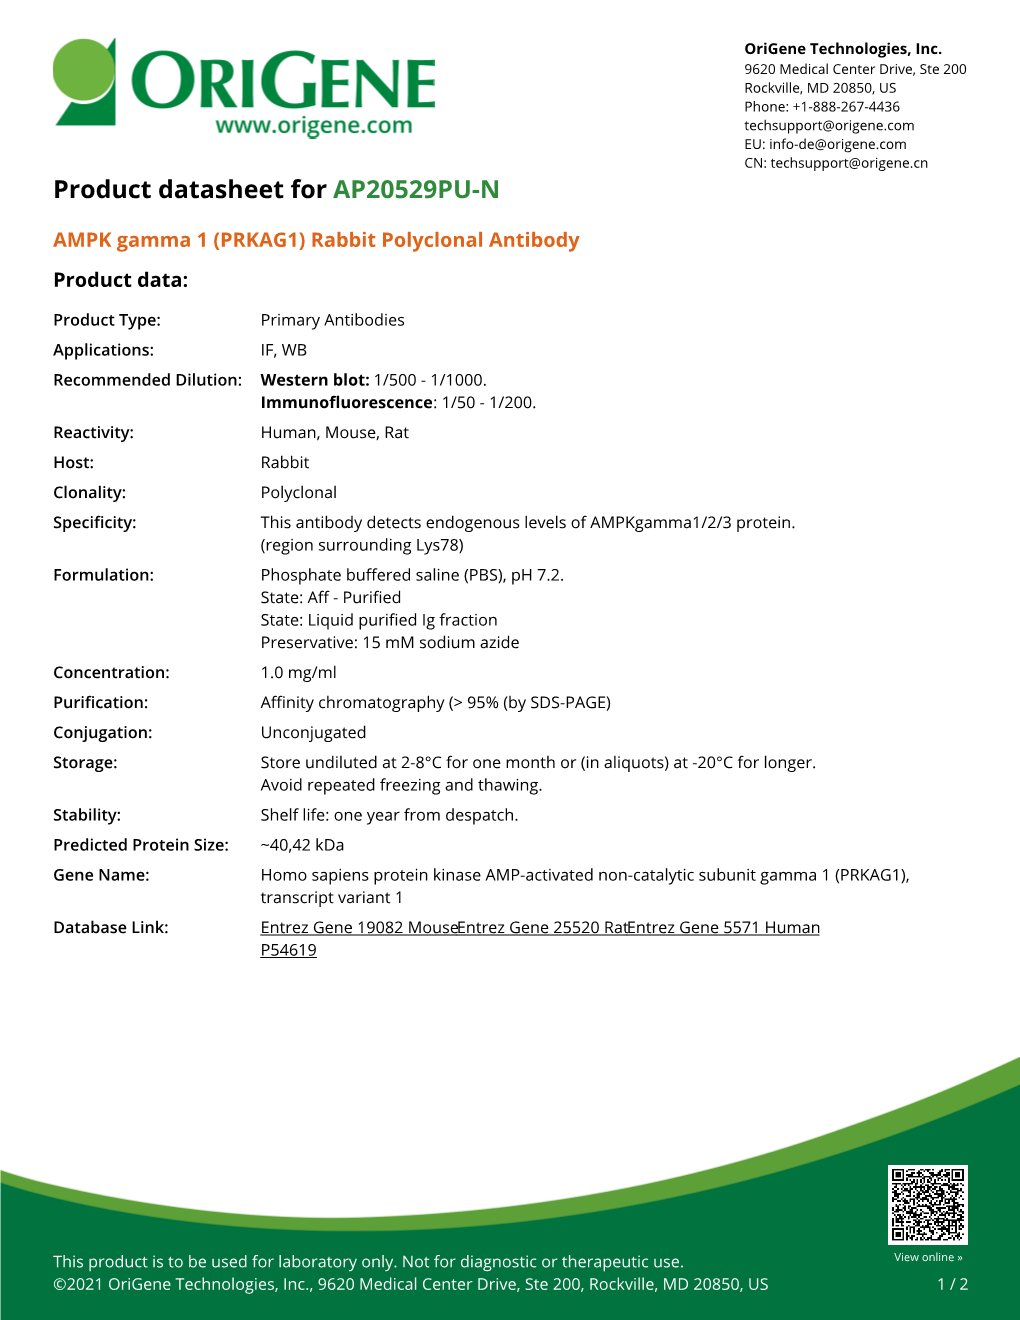 AMPK Gamma 1 (PRKAG1) Rabbit Polyclonal Antibody Product Data